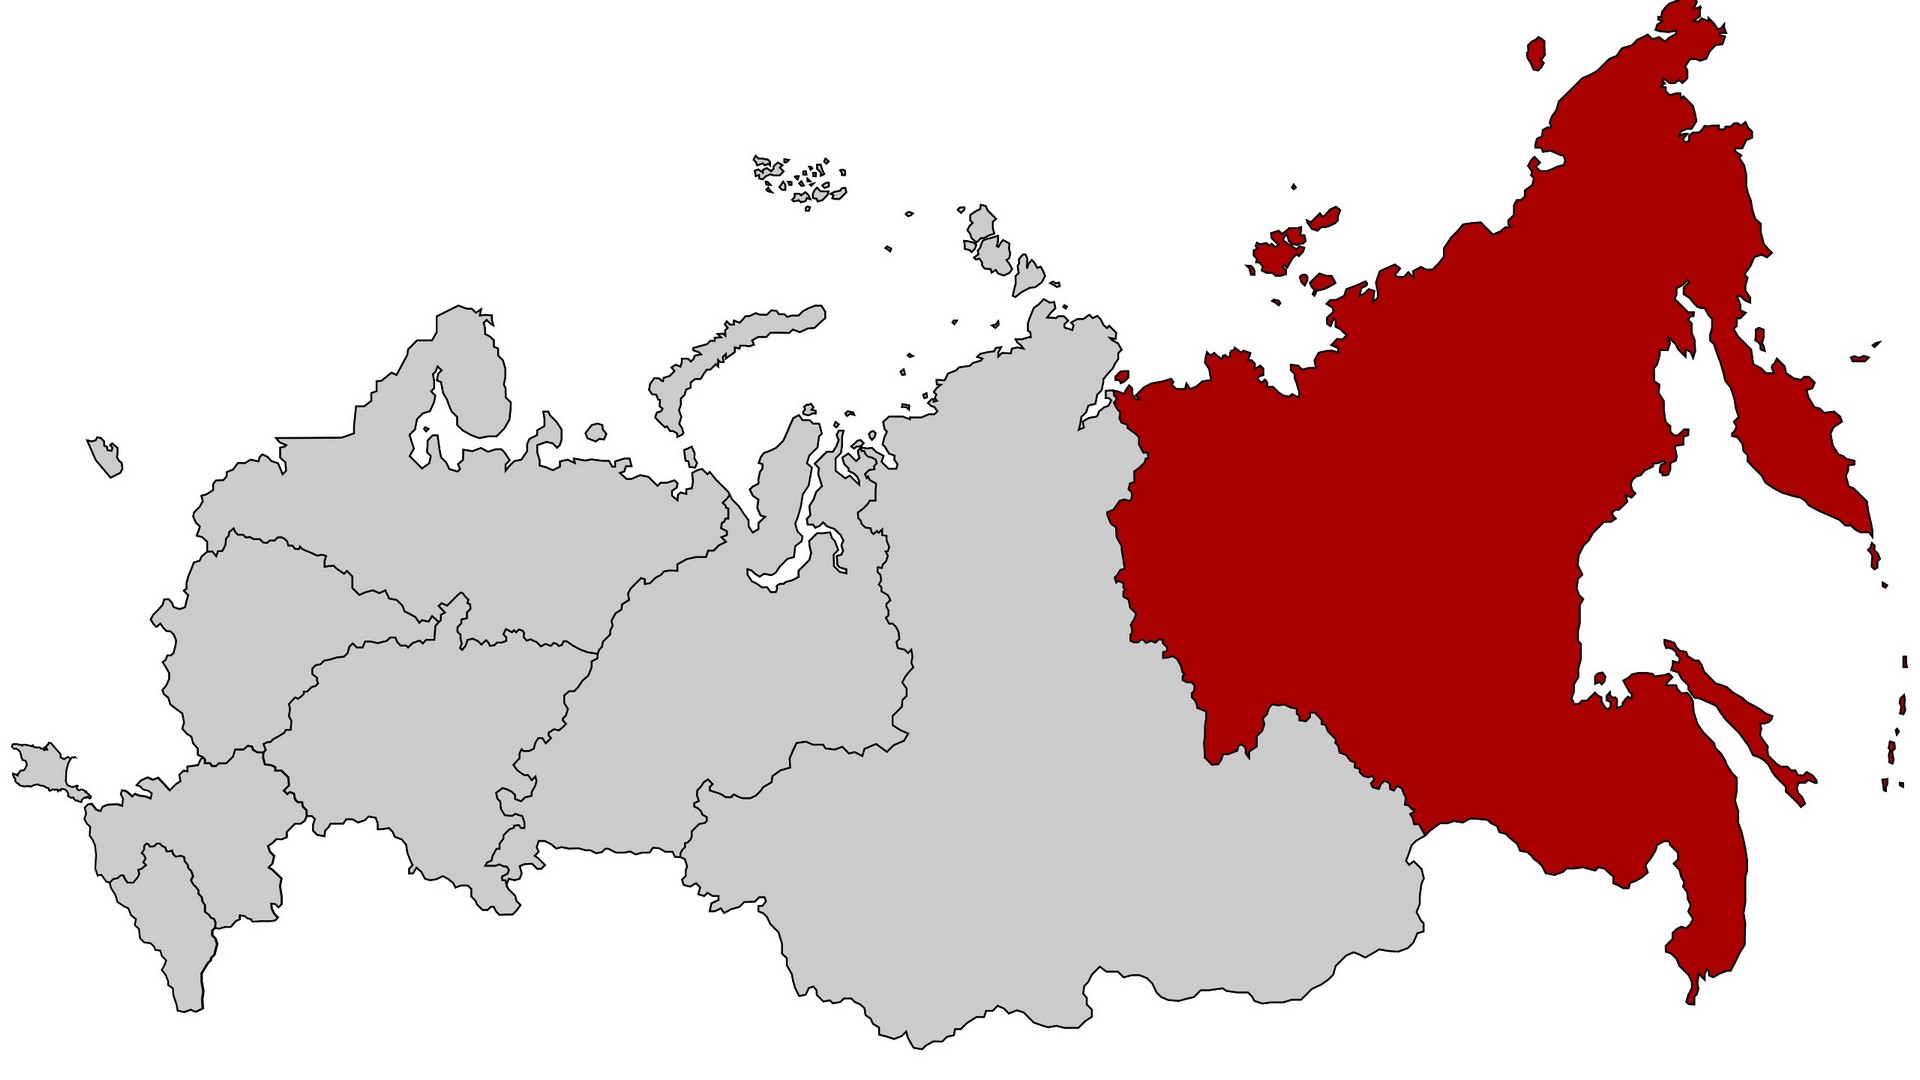 Дальневосточная республика: с Россией или без России?